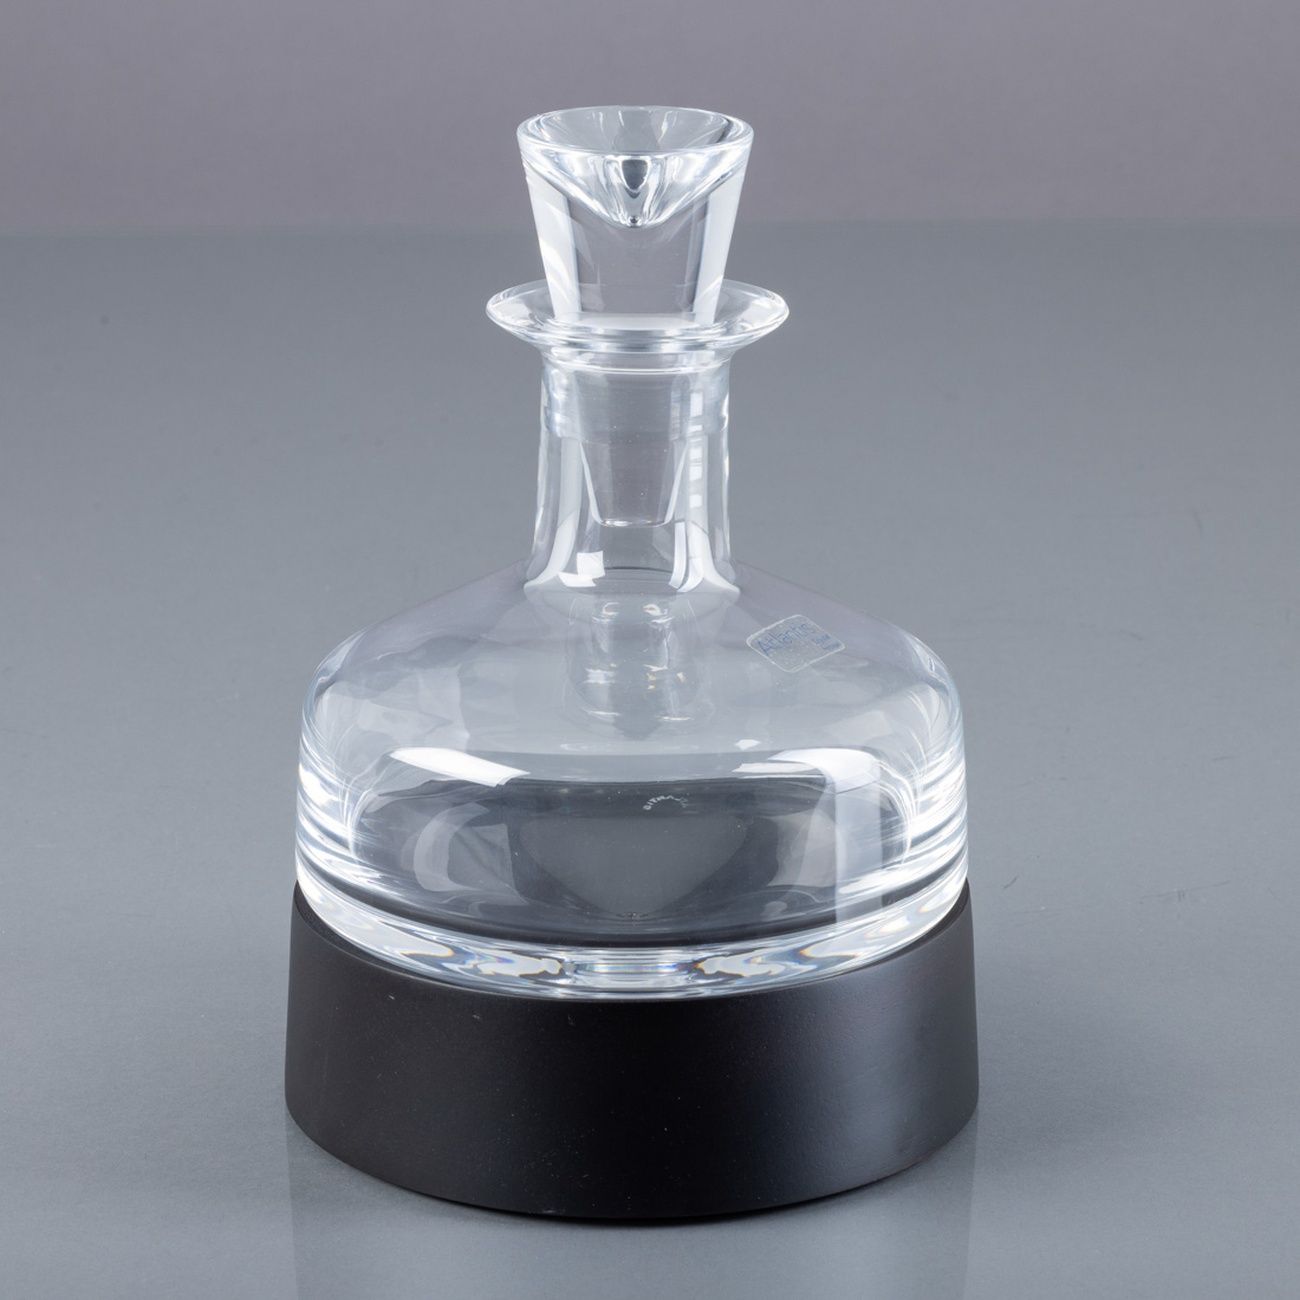 GARRAFA COM BASE 带底座的酒瓶 模制的亚特兰蒂斯水晶。标有方框。_x000D_

总尺寸：23厘米。